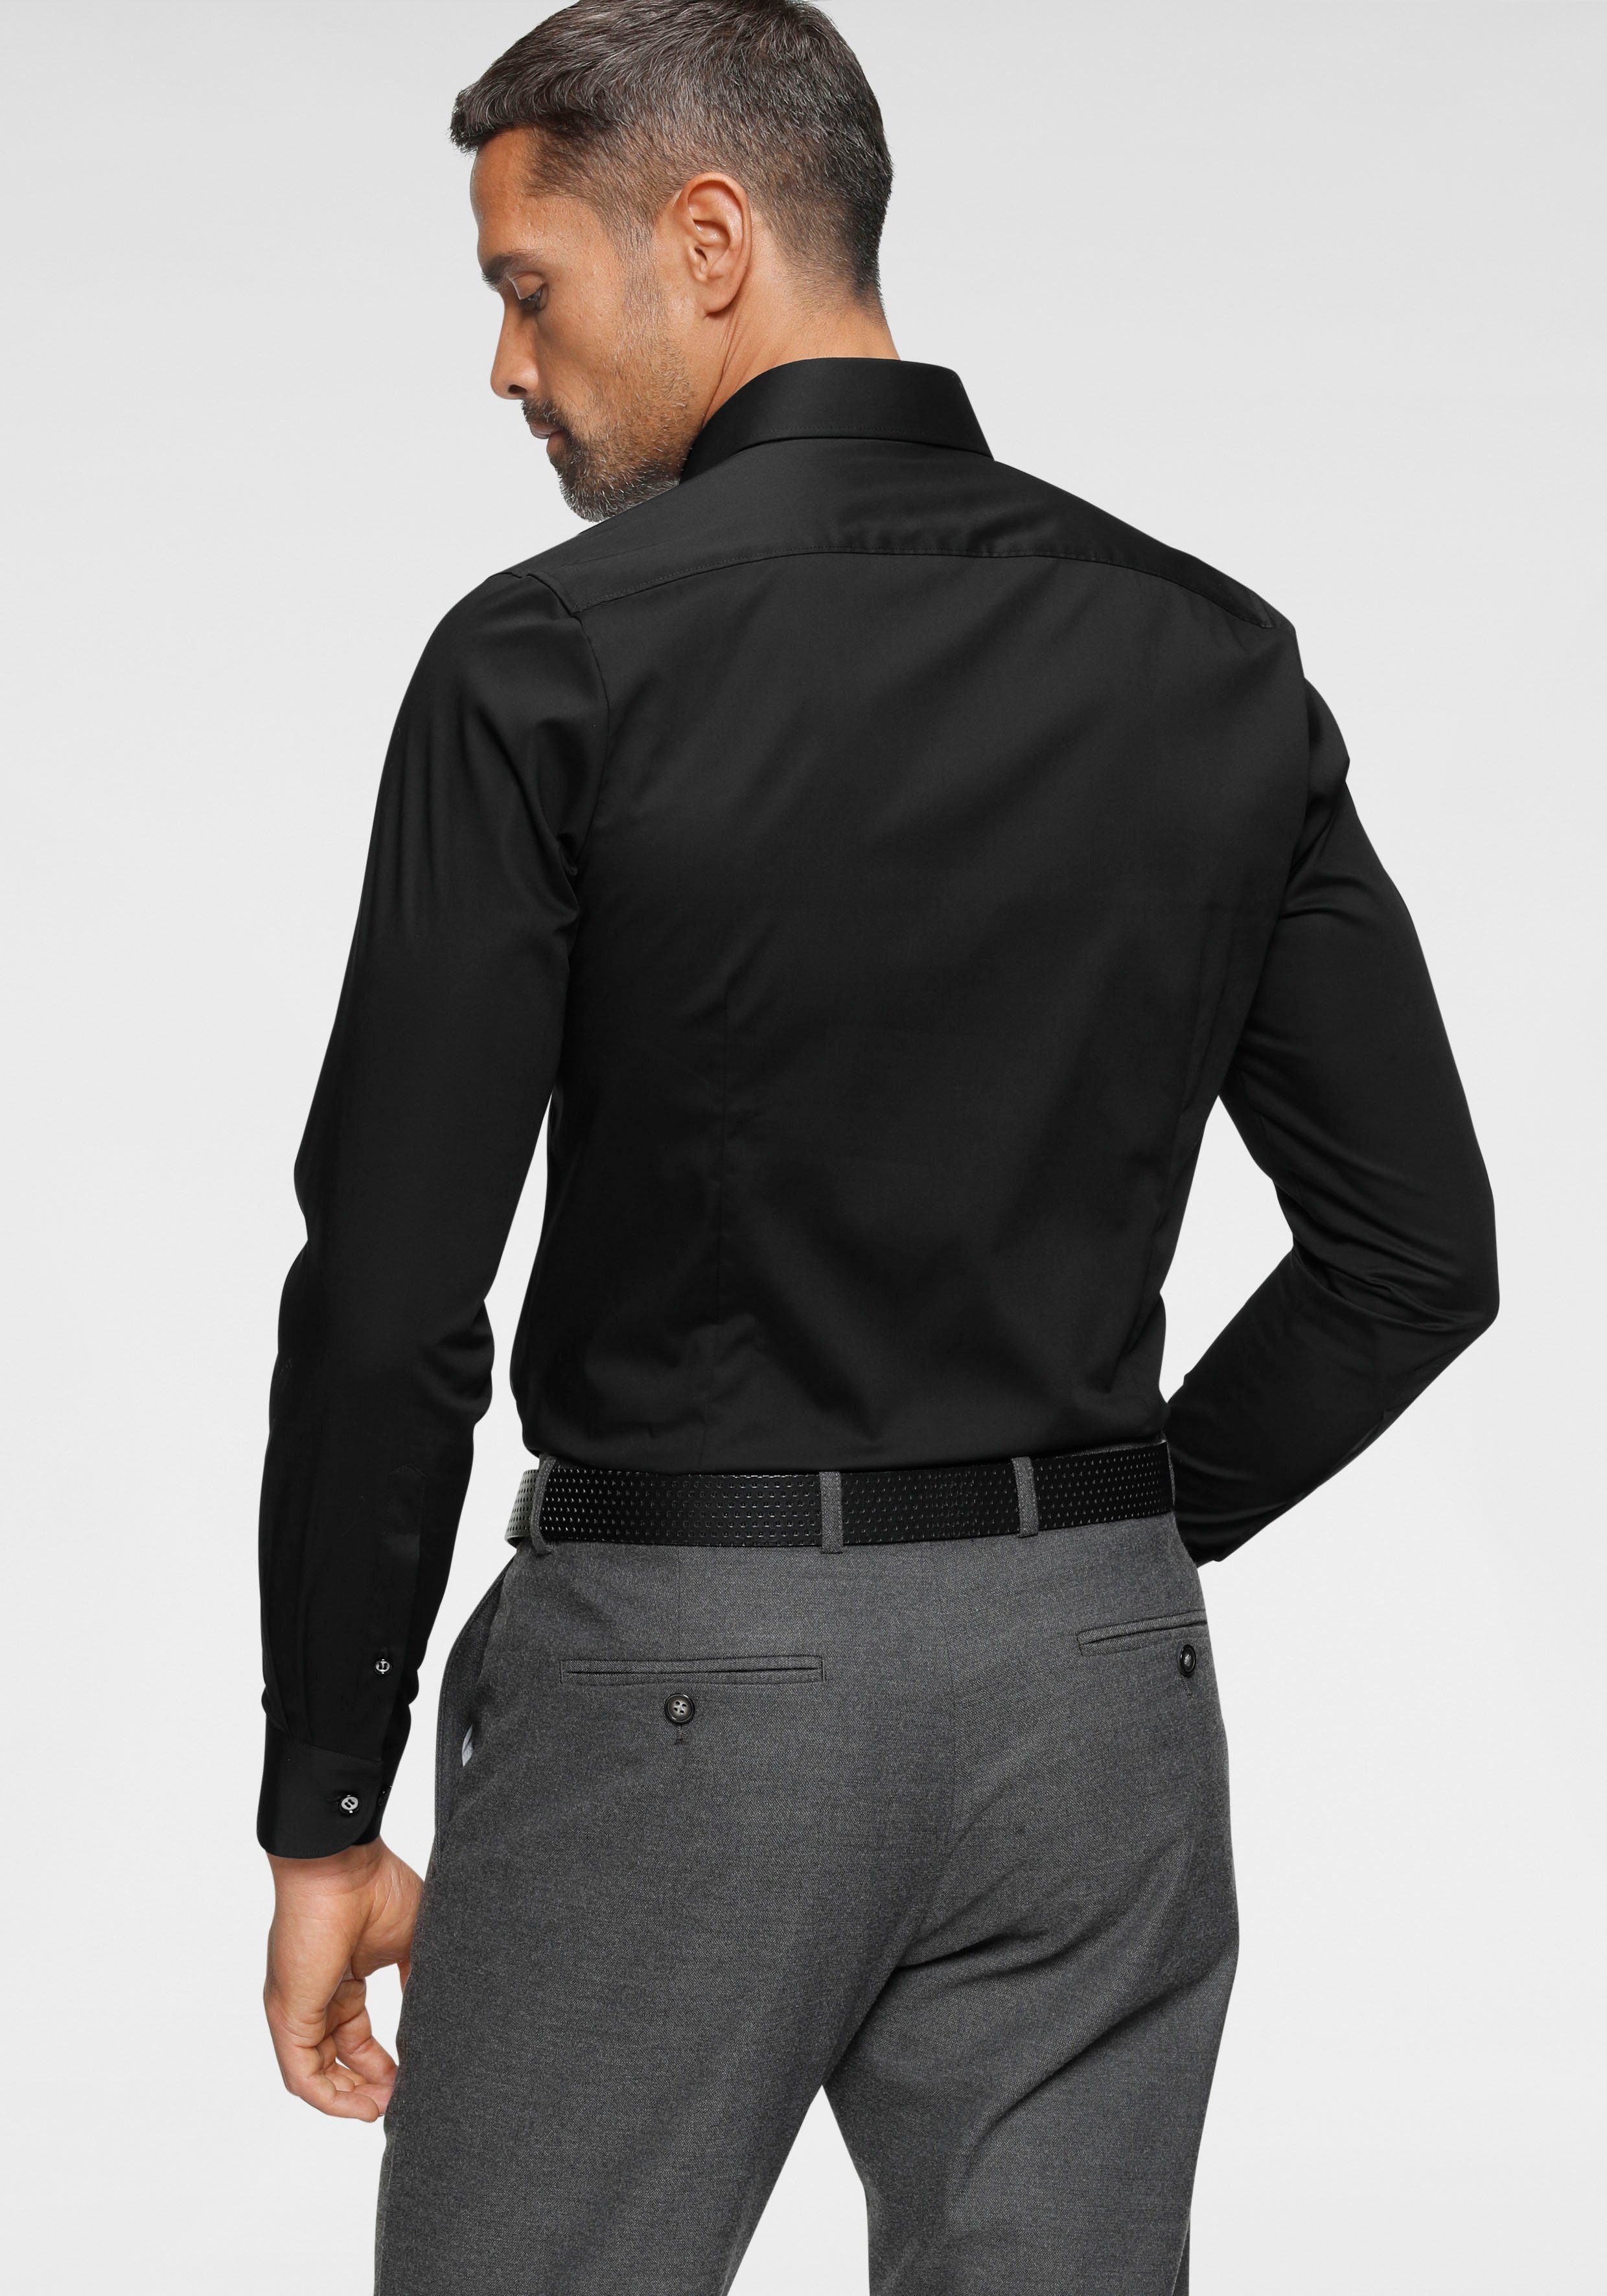 OLYMP im Businesshemd tailliert Slim-fit/ Italienische Knopfleiste, body Five schmale mit Rücken Abnähern Level Form, fit